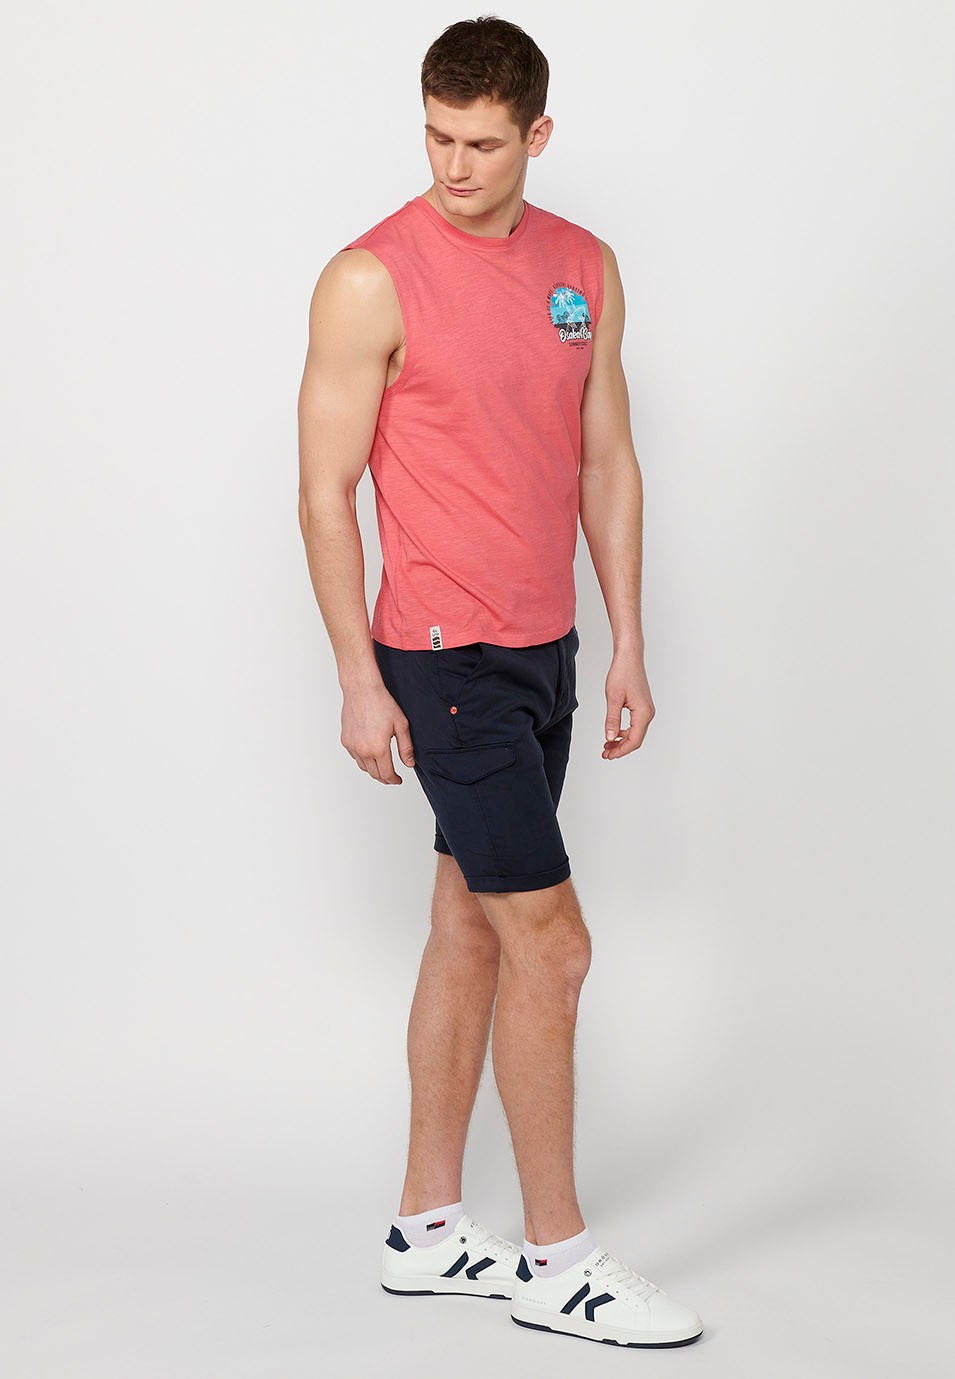 Camiseta de tirantes, sin mangas, estampada color coral para hombres